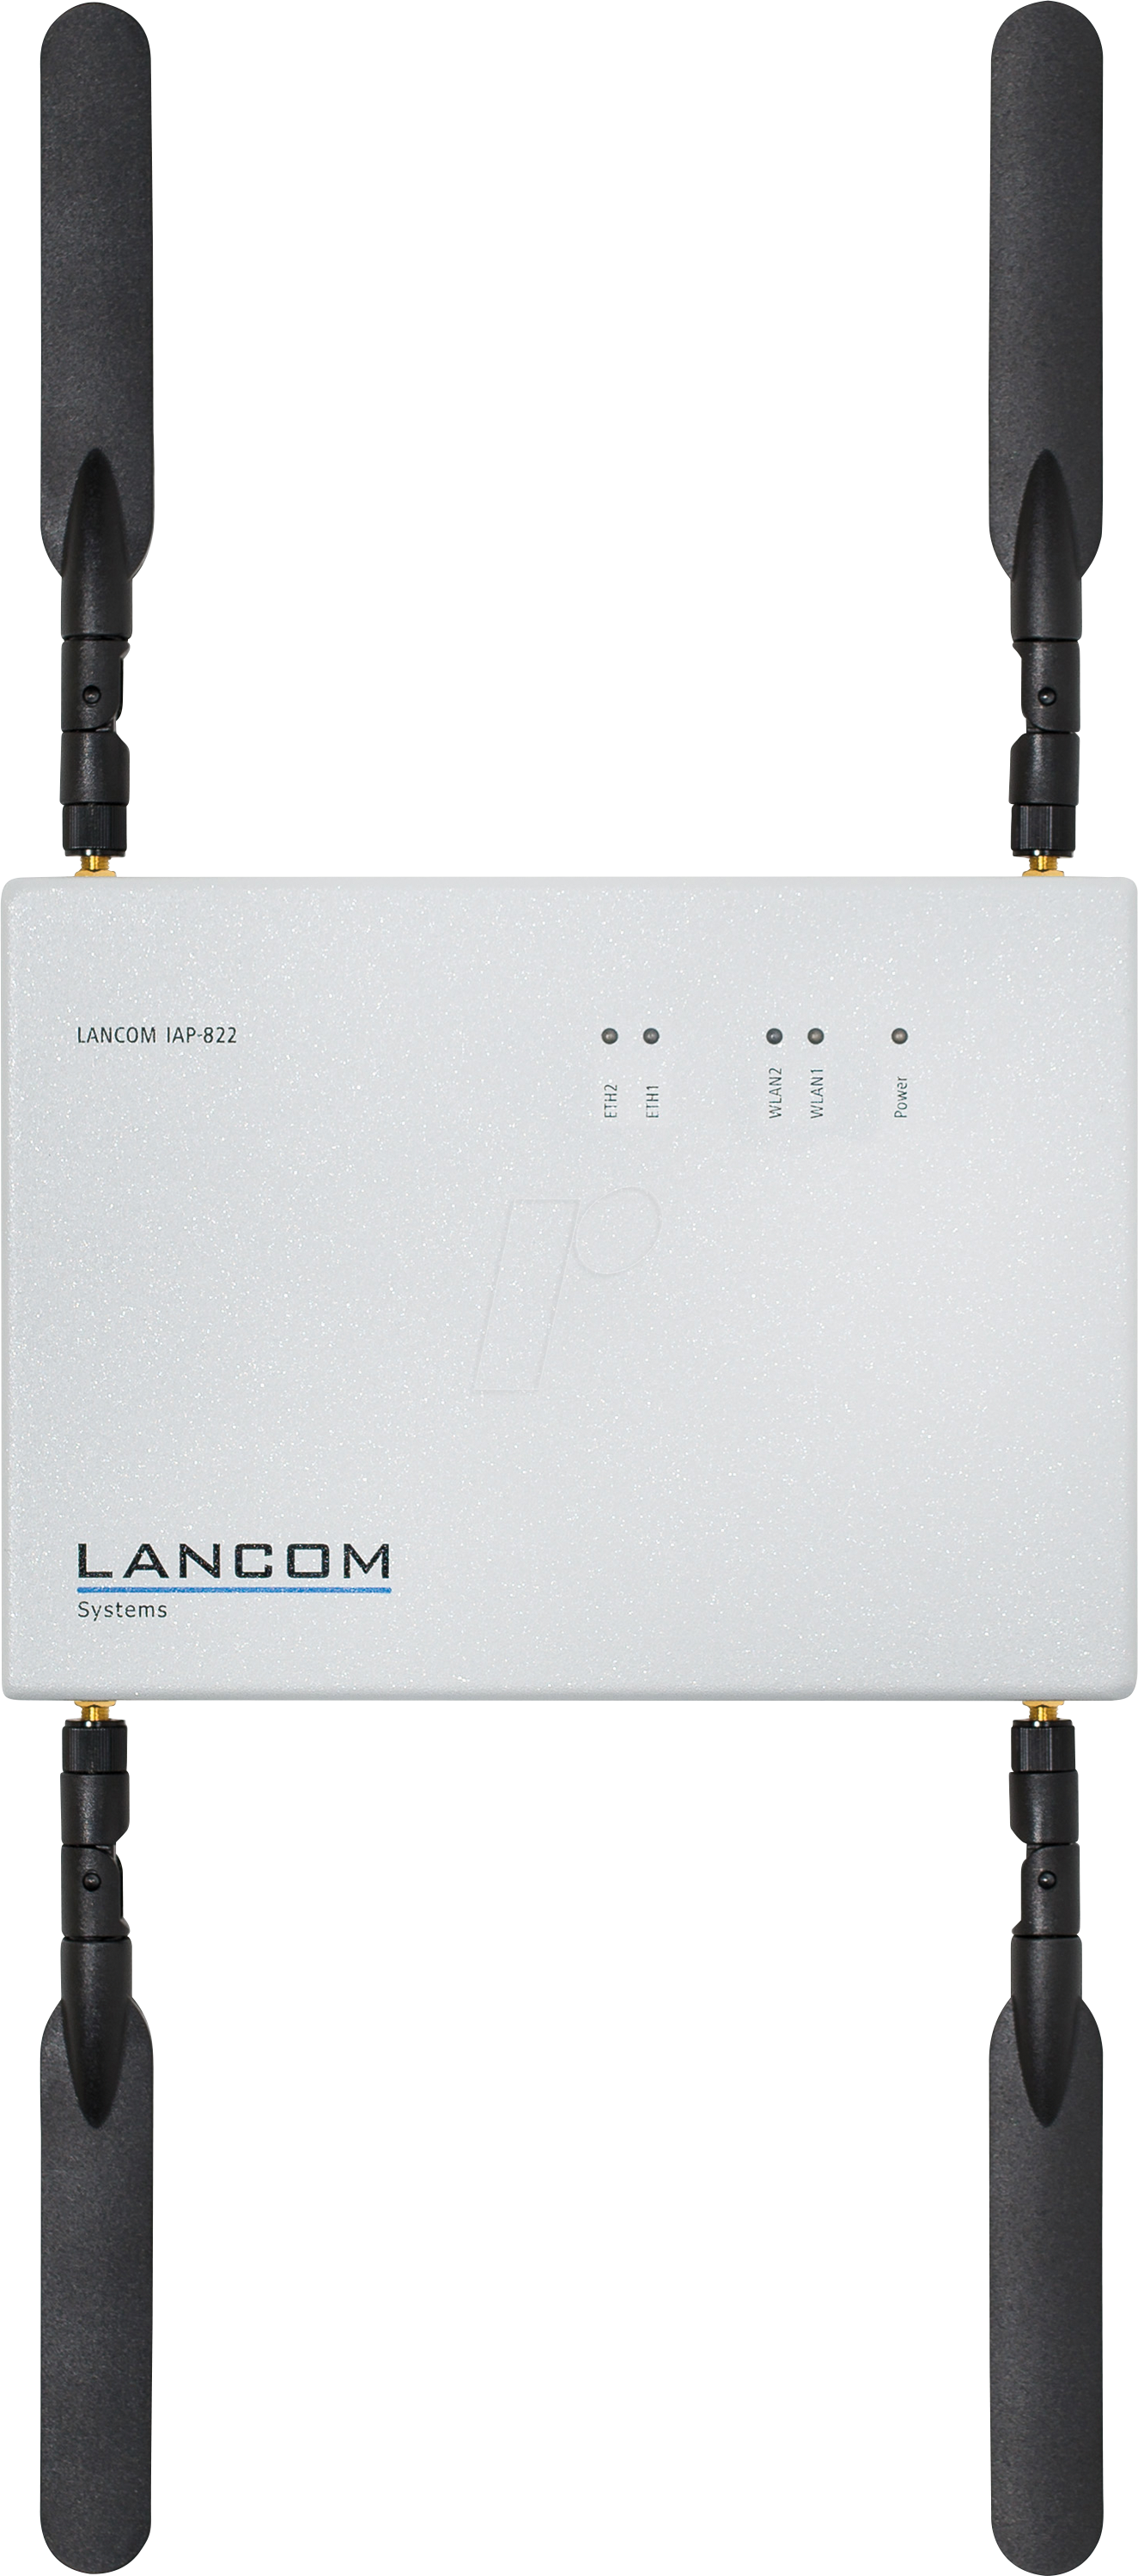 LANCOM IAP-822B5 - WLAN Access Point 2.4/5 GHz 1167 MBit/s, 5er Pack von Lancom